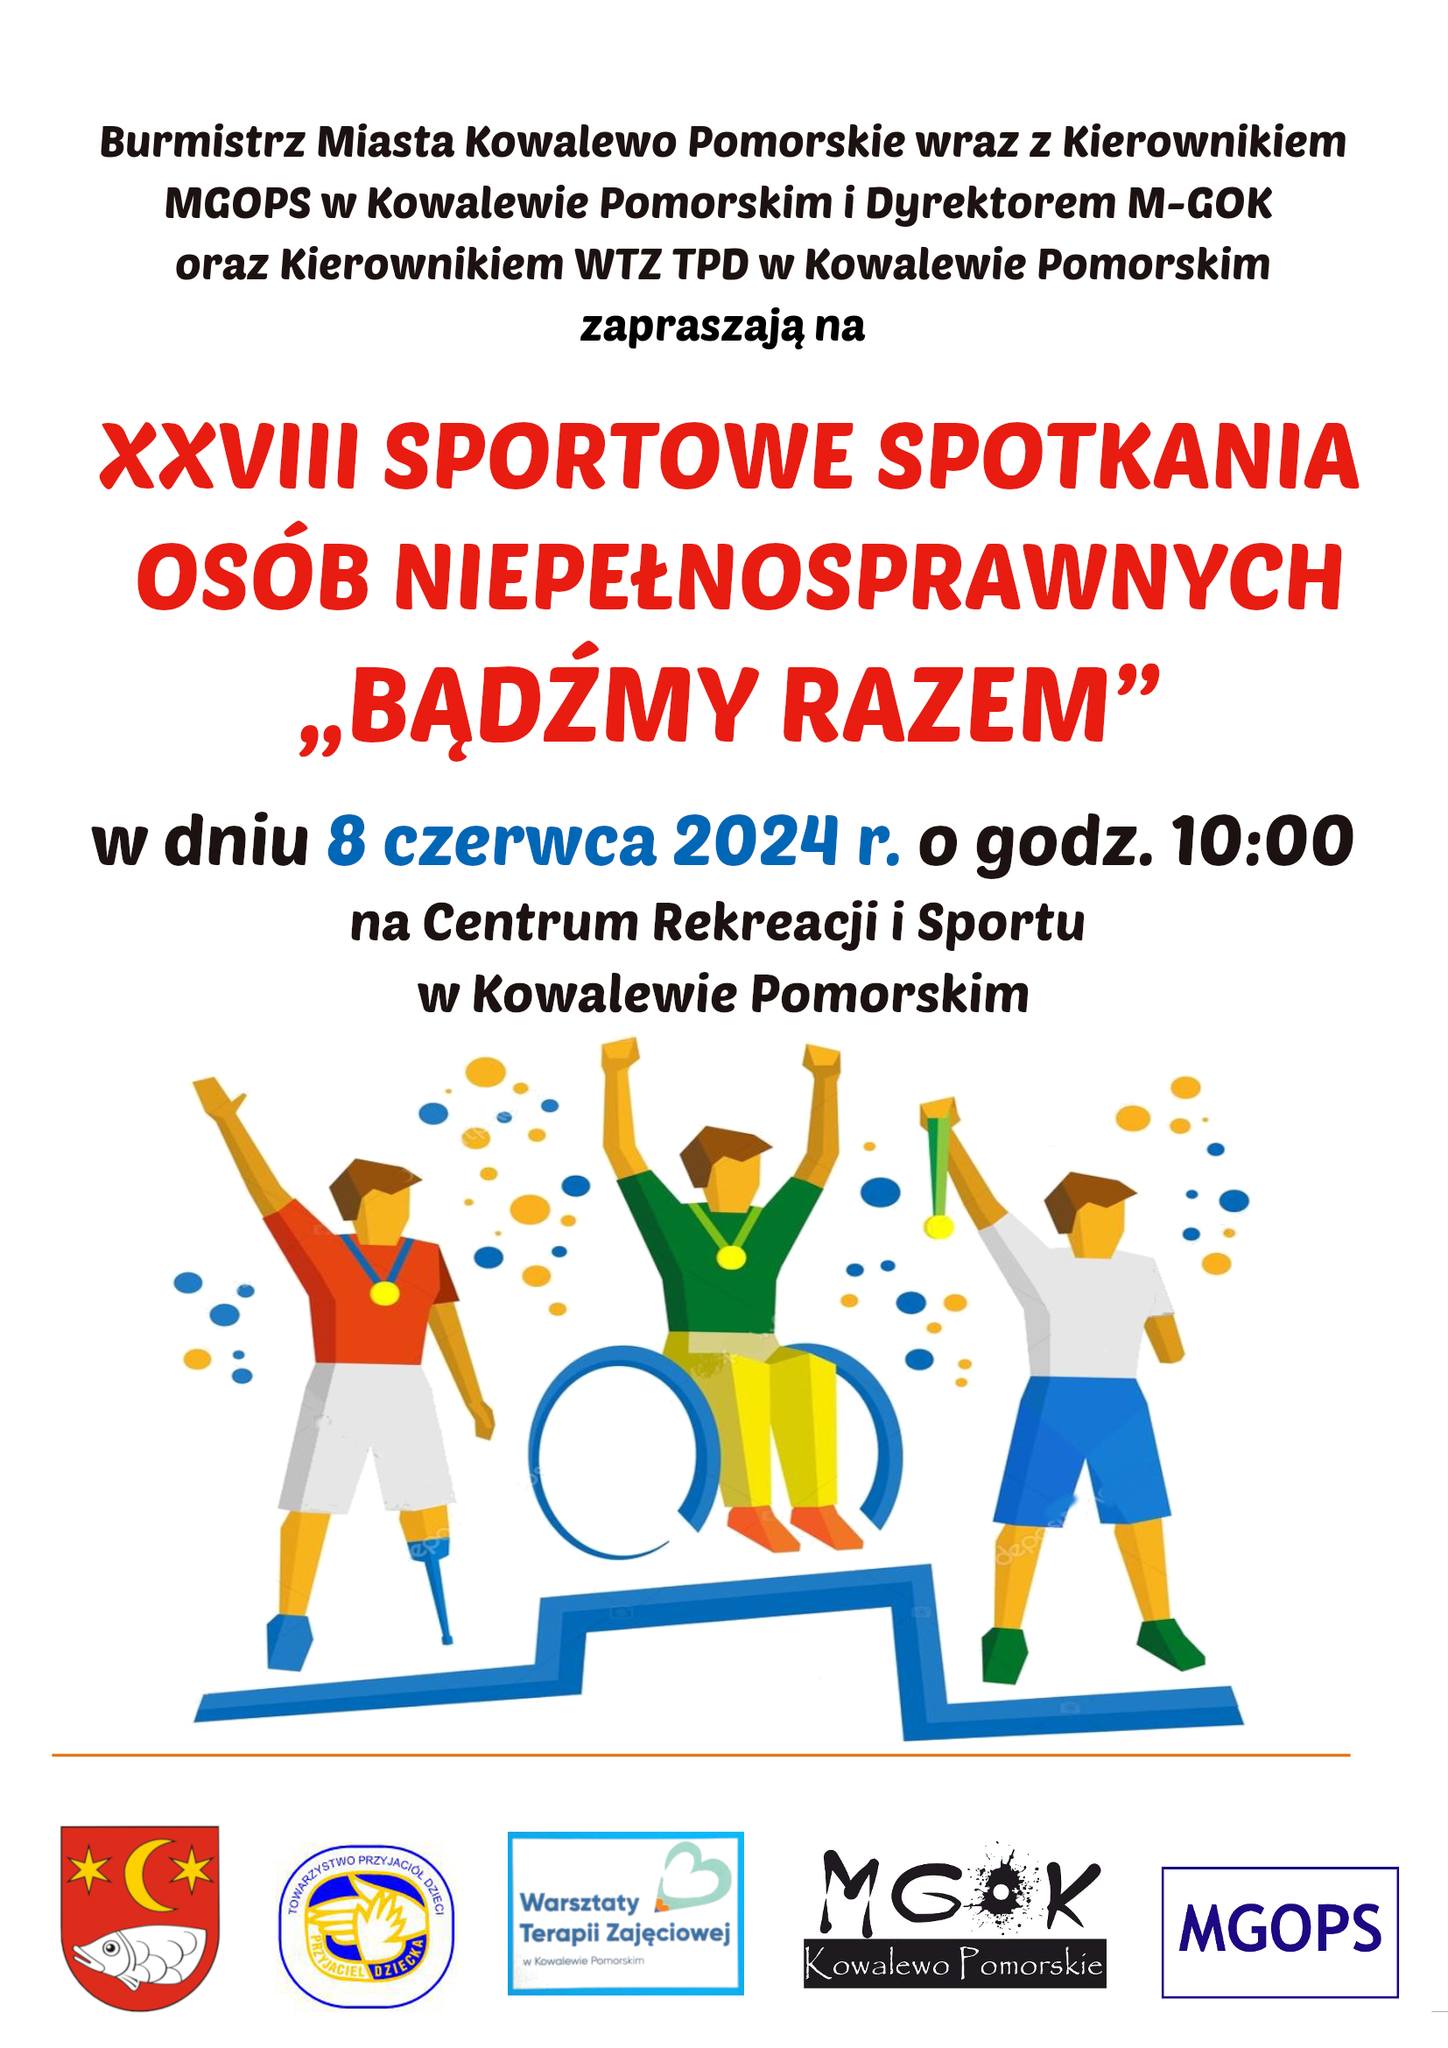 XXVIII Sportowe spotkania osób niepełnosprawnych "Bądźmy razem" w Kowalewie Pomorskim